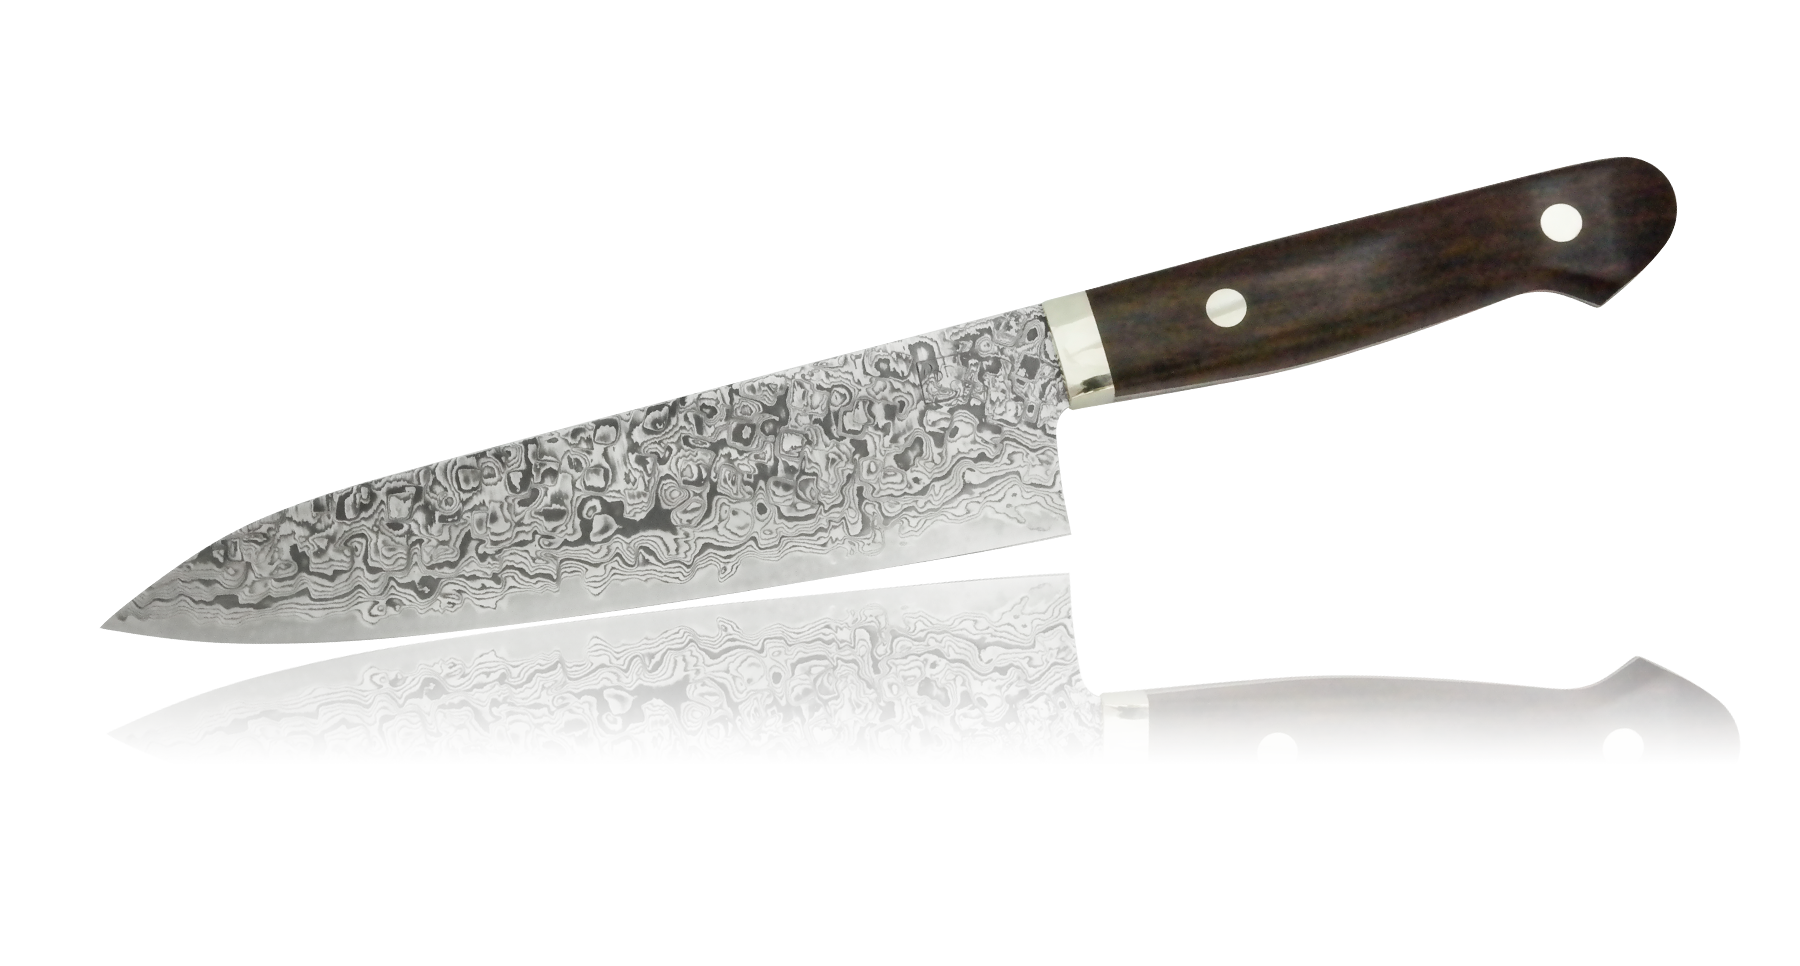 Нож Шеф Hiroo Itou, 180 мм, сталь R-2 в обкладках Damaskus, рукоять железное дерево